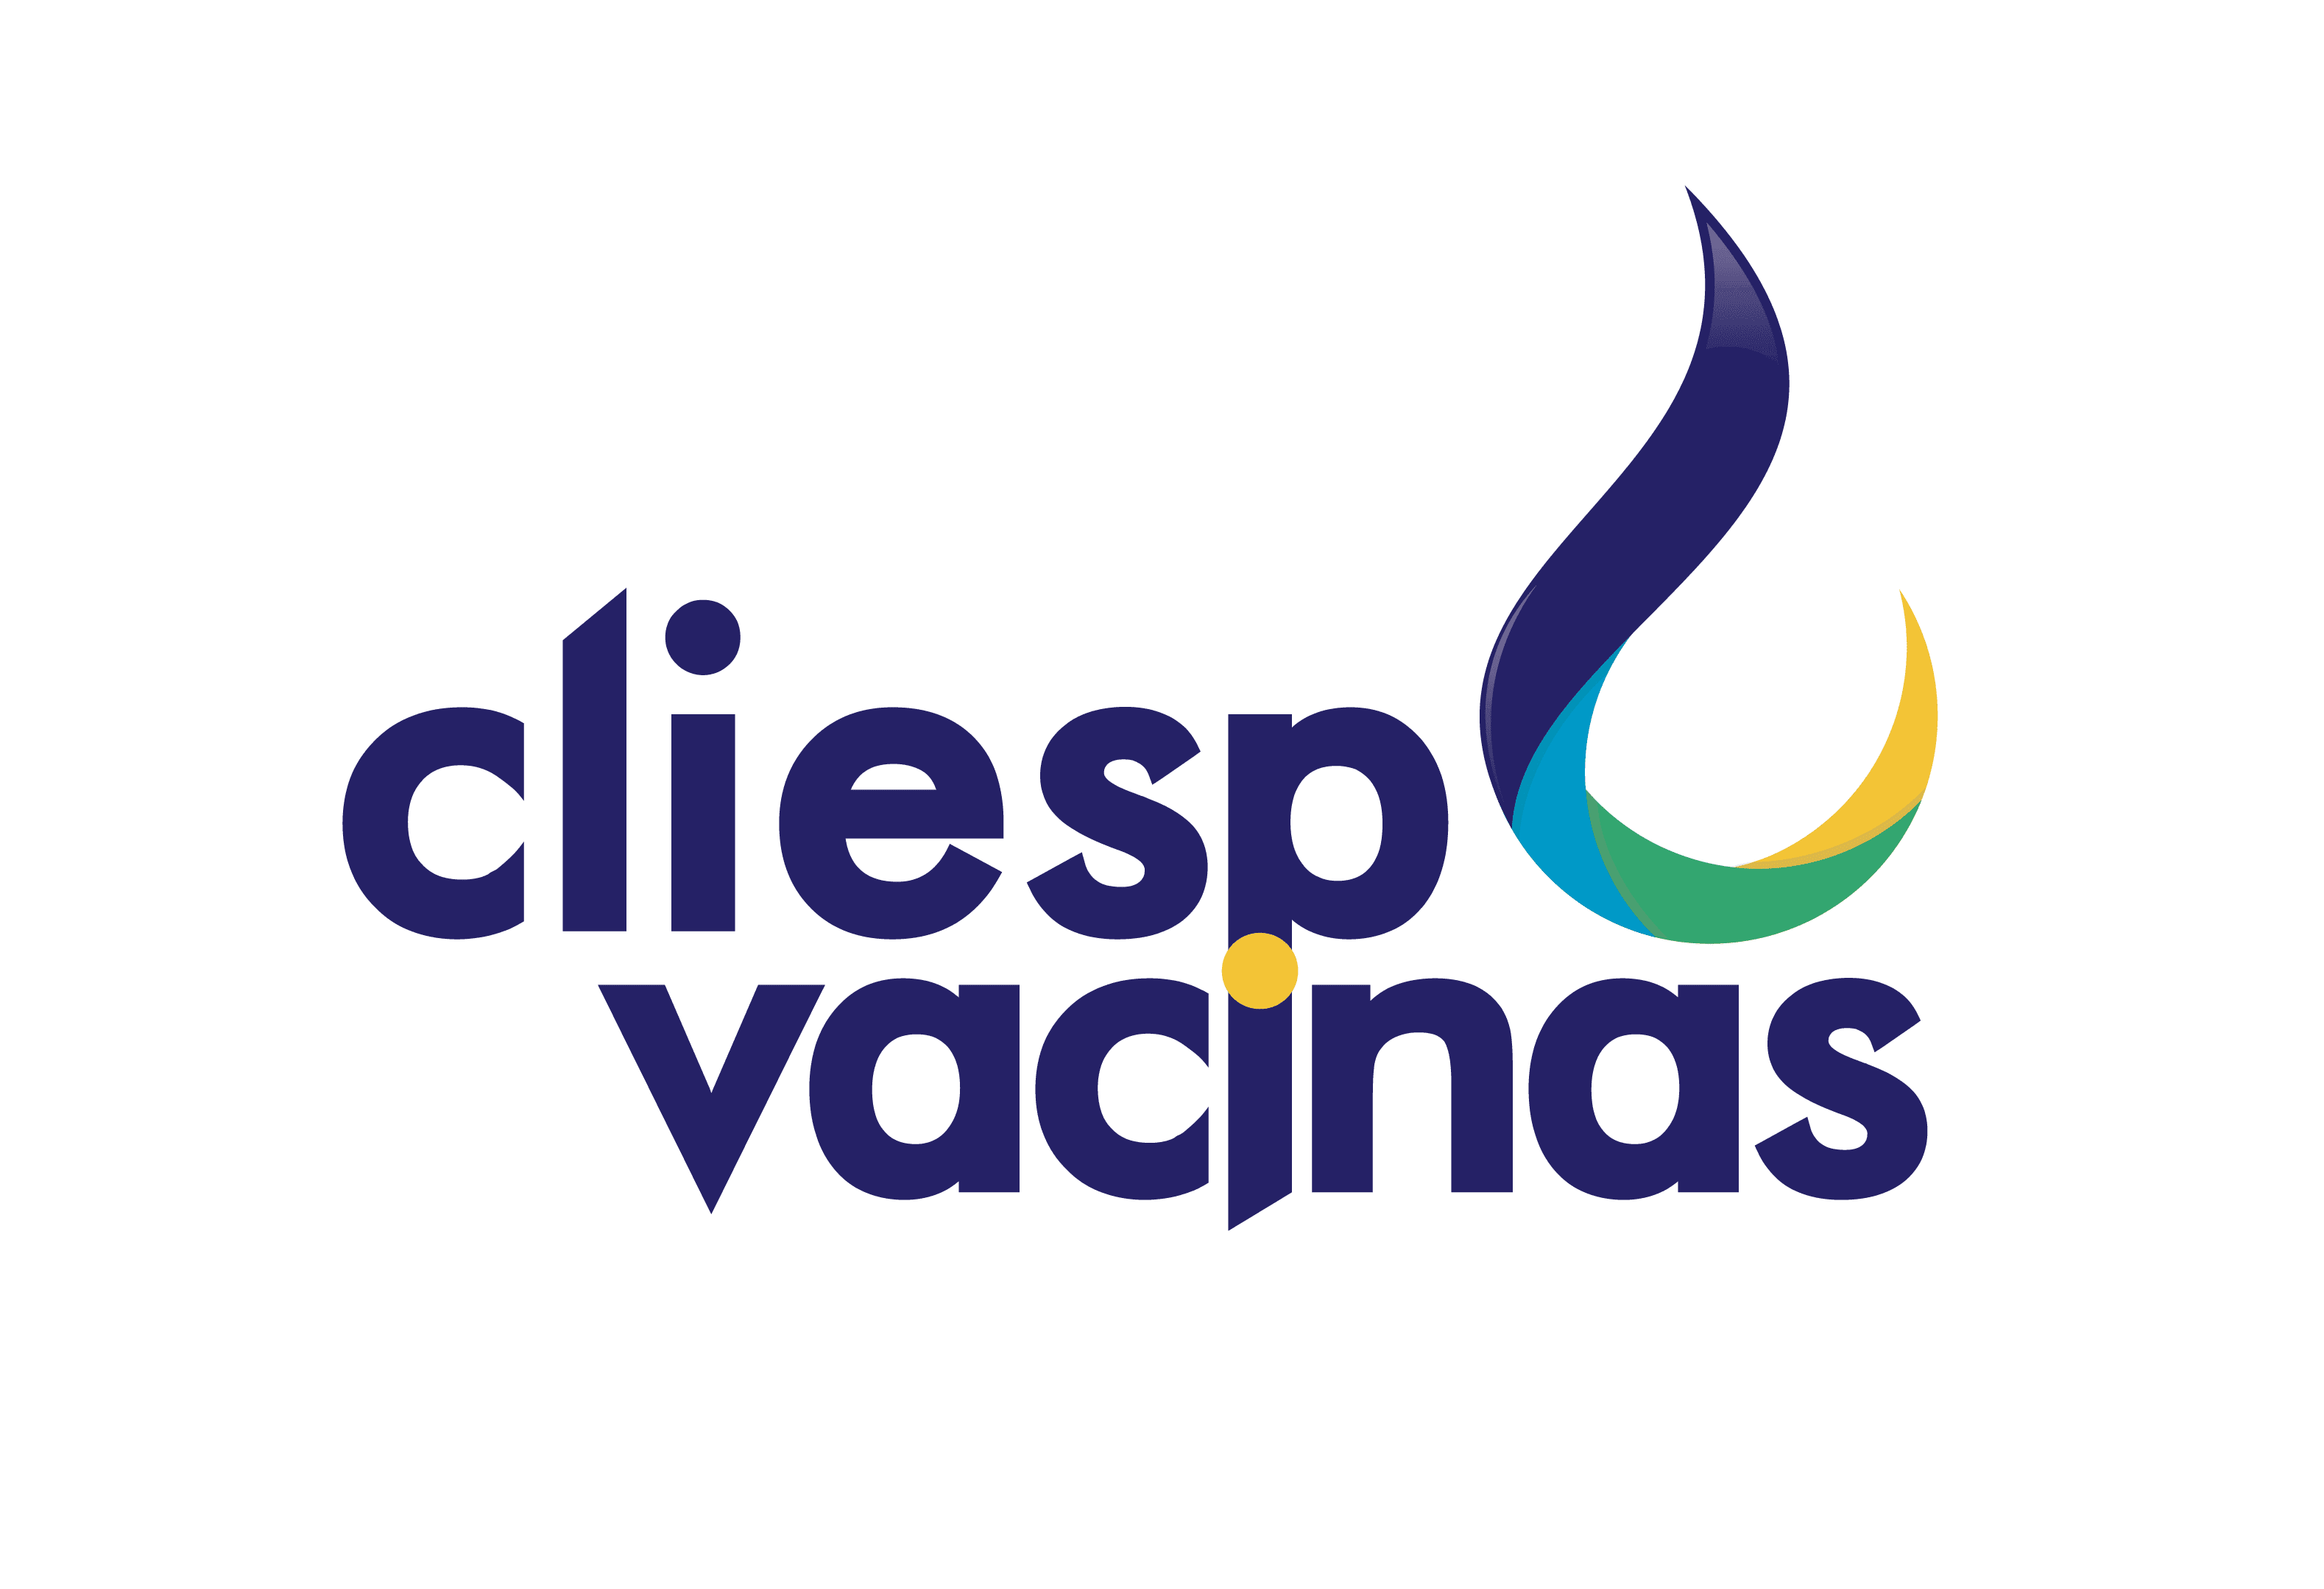 Cliesp Vacinas